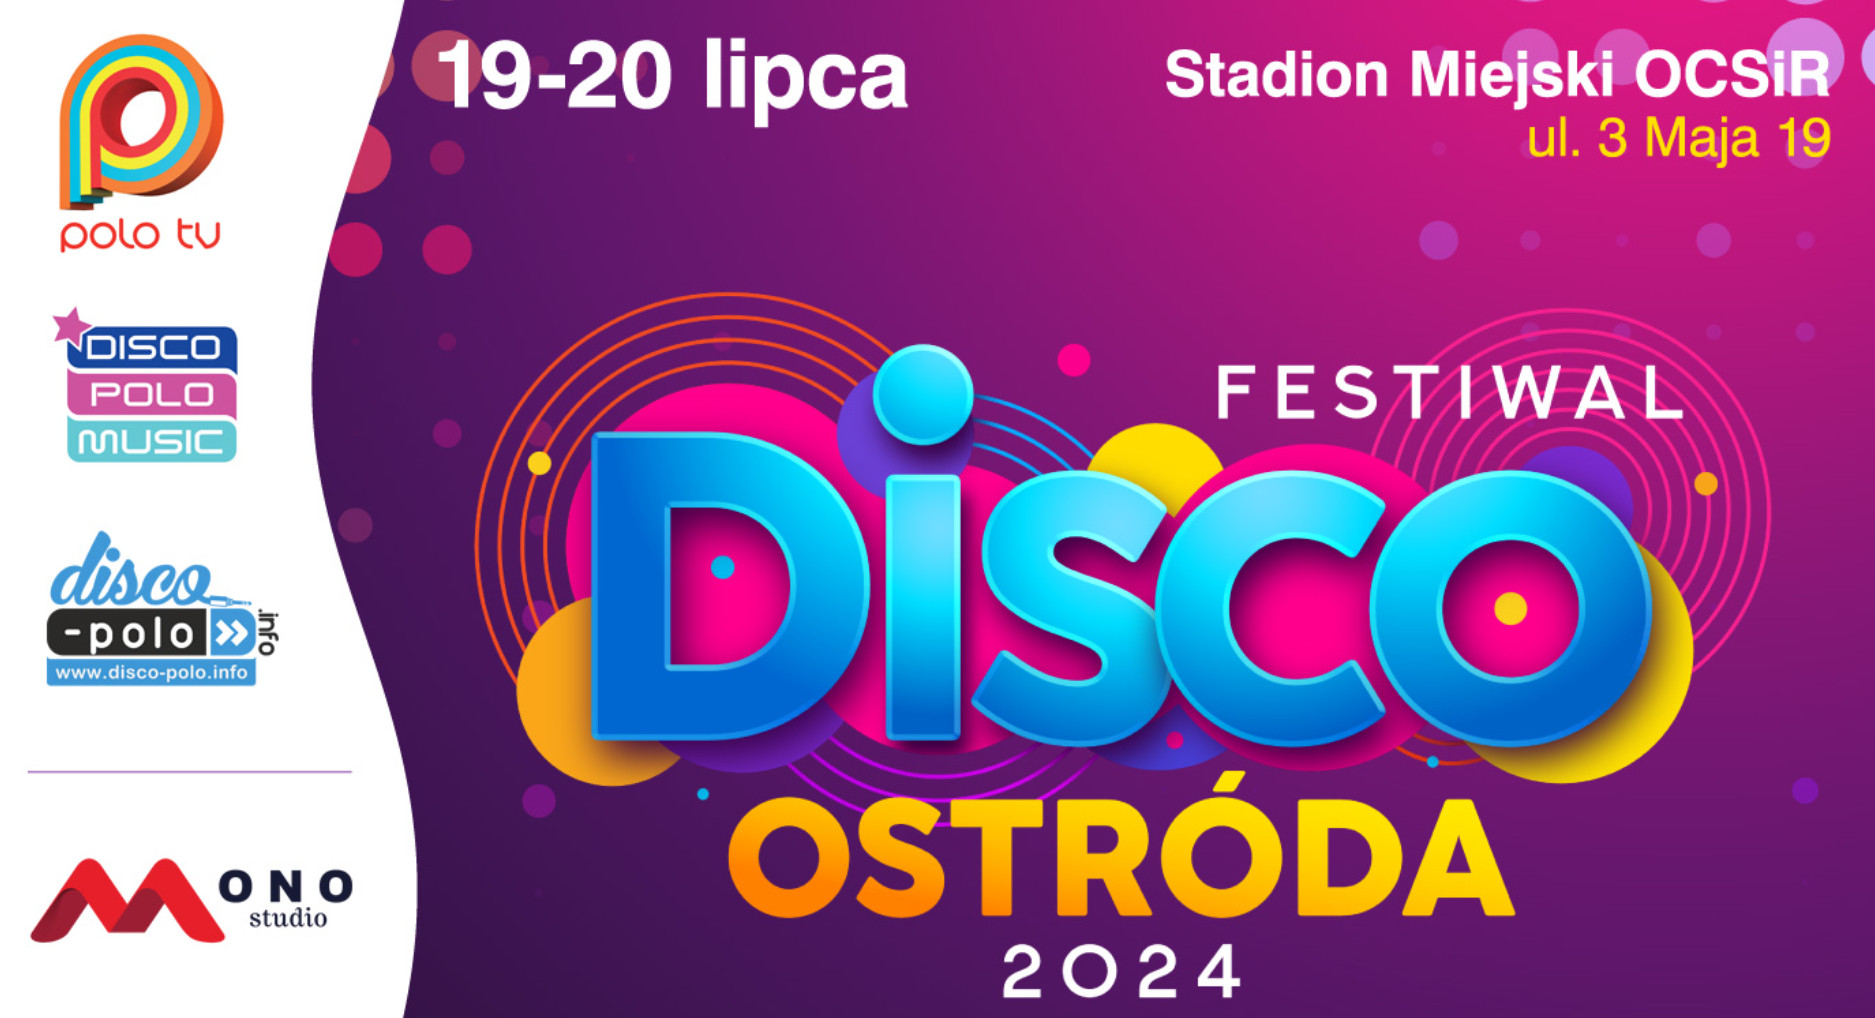 Festiwal Disco Ostróda 2024! Podział na dni - kto wystąpi w piątek i w sobotę